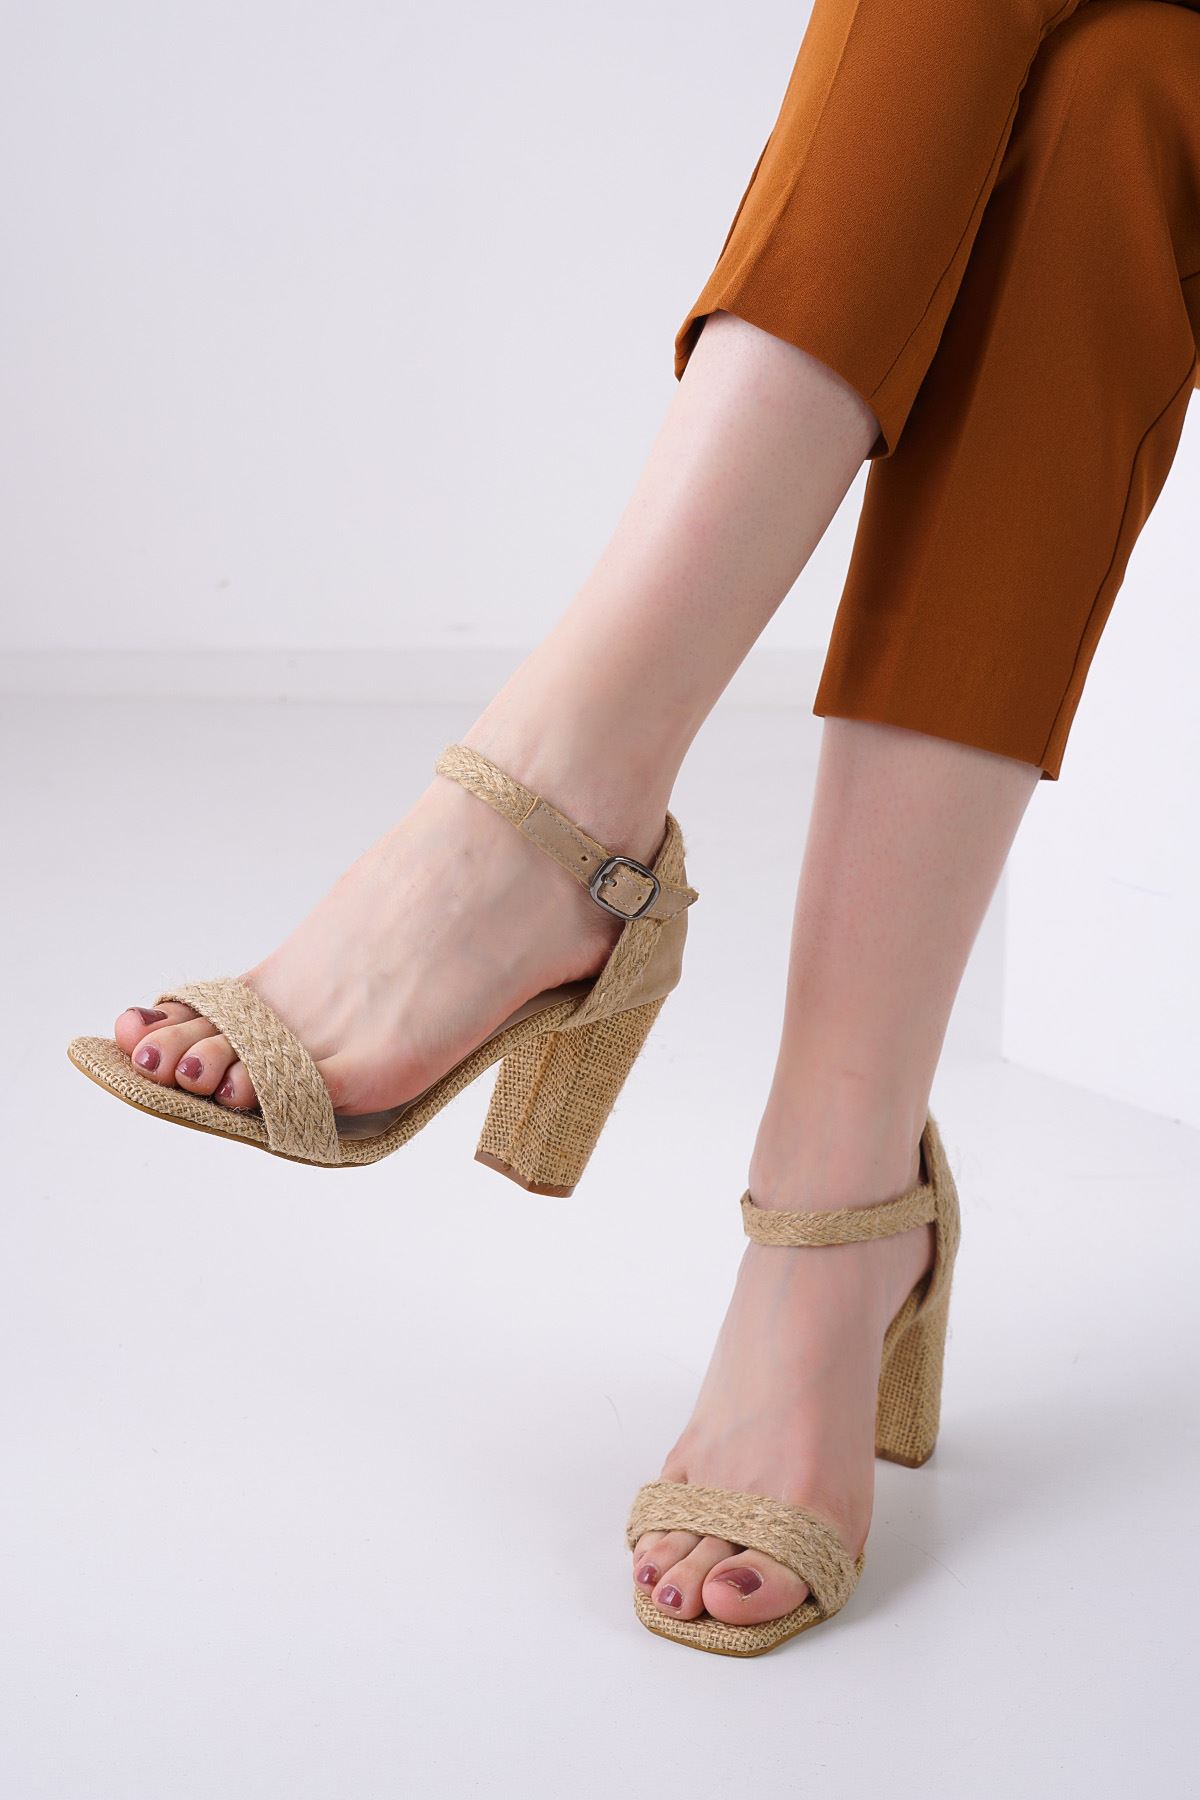 Janell Hasır Topuklu Kadın Ayakkabı